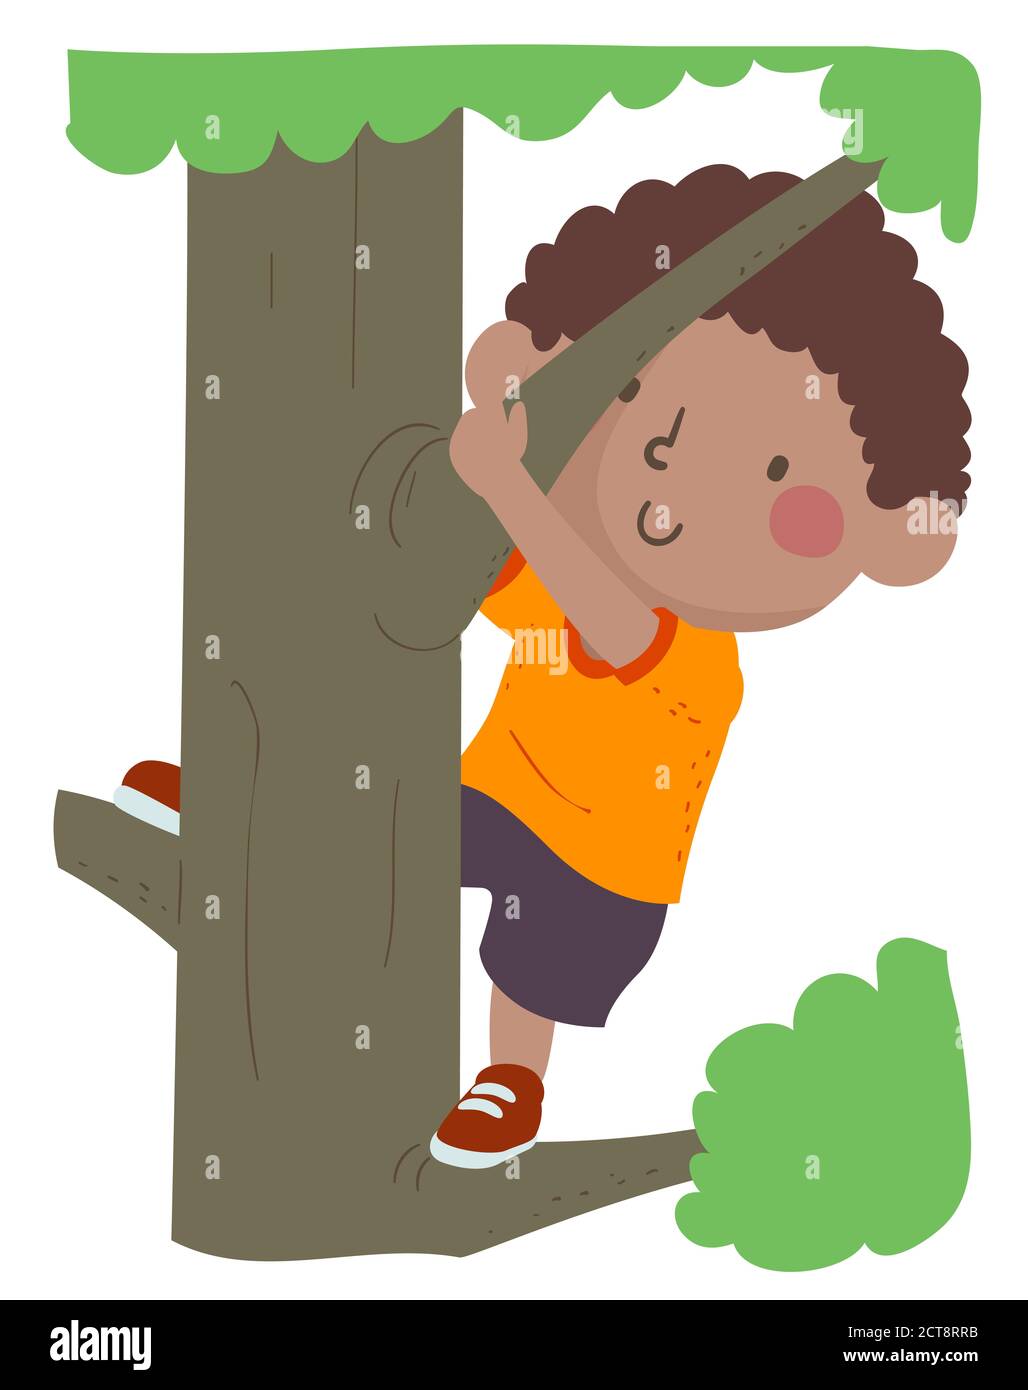 Illustrazione di un ragazzo Kid che arrampica un albero, una memoria dell'infanzia Foto Stock